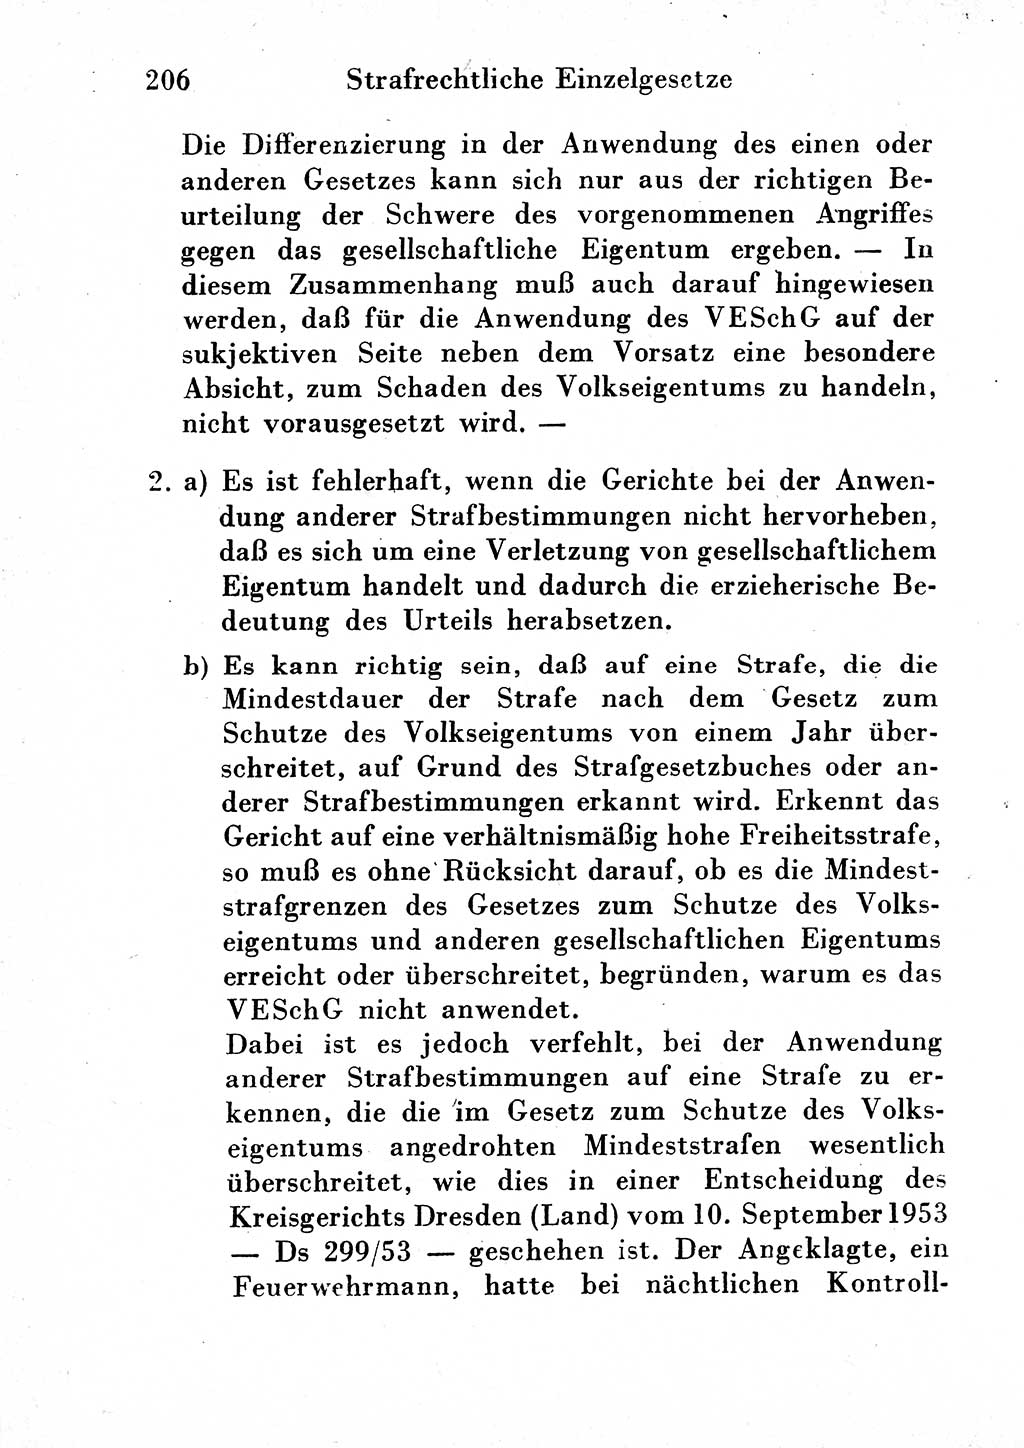 Strafgesetzbuch (StGB) und andere Strafgesetze [Deutsche Demokratische Republik (DDR)] 1954, Seite 206 (StGB Strafges. DDR 1954, S. 206)